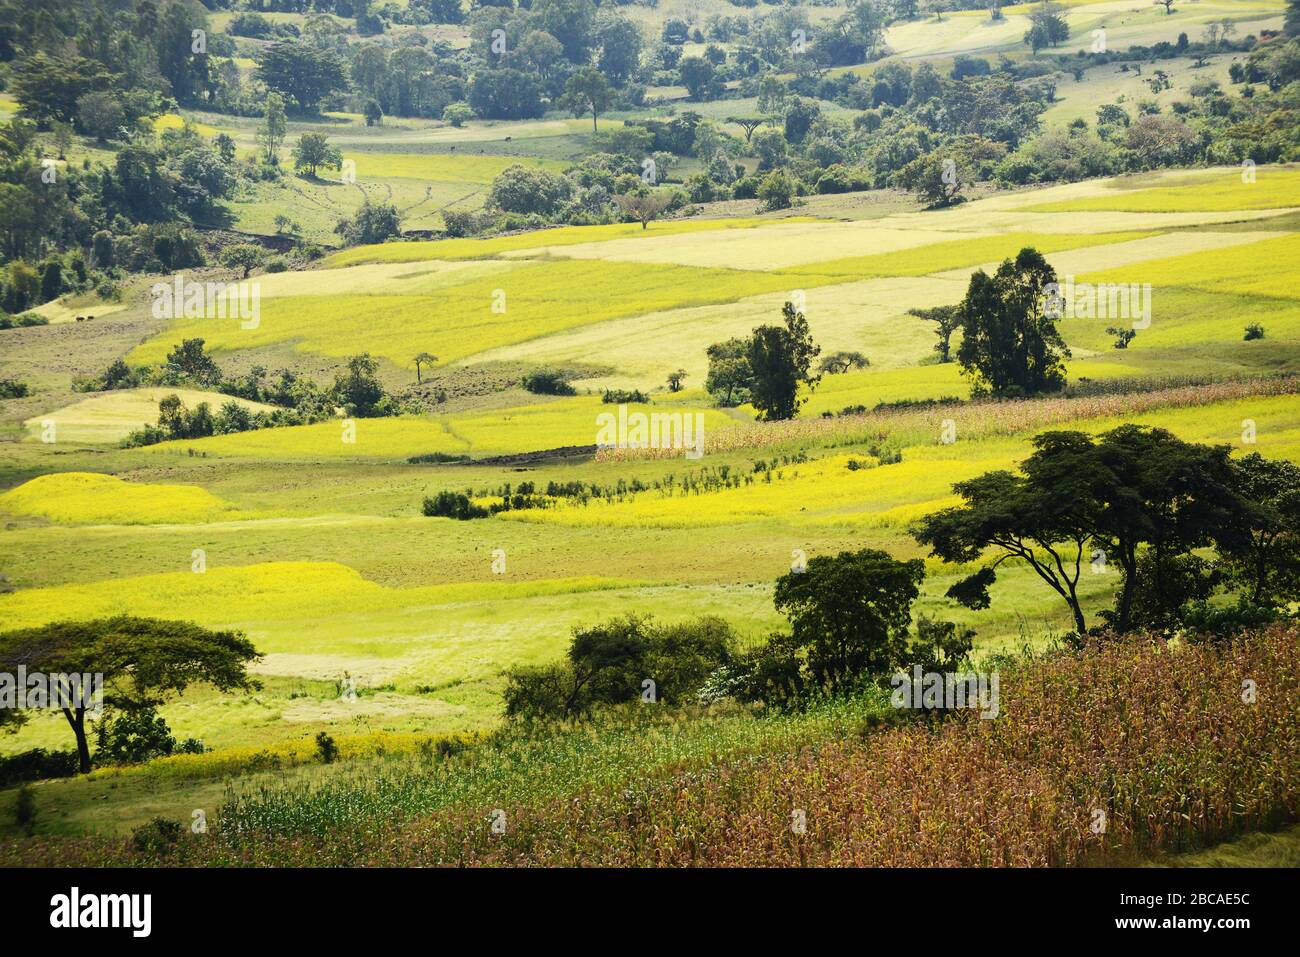 Paysages agricoles dans la région de Kafa en Ethiopie. Banque D'Images